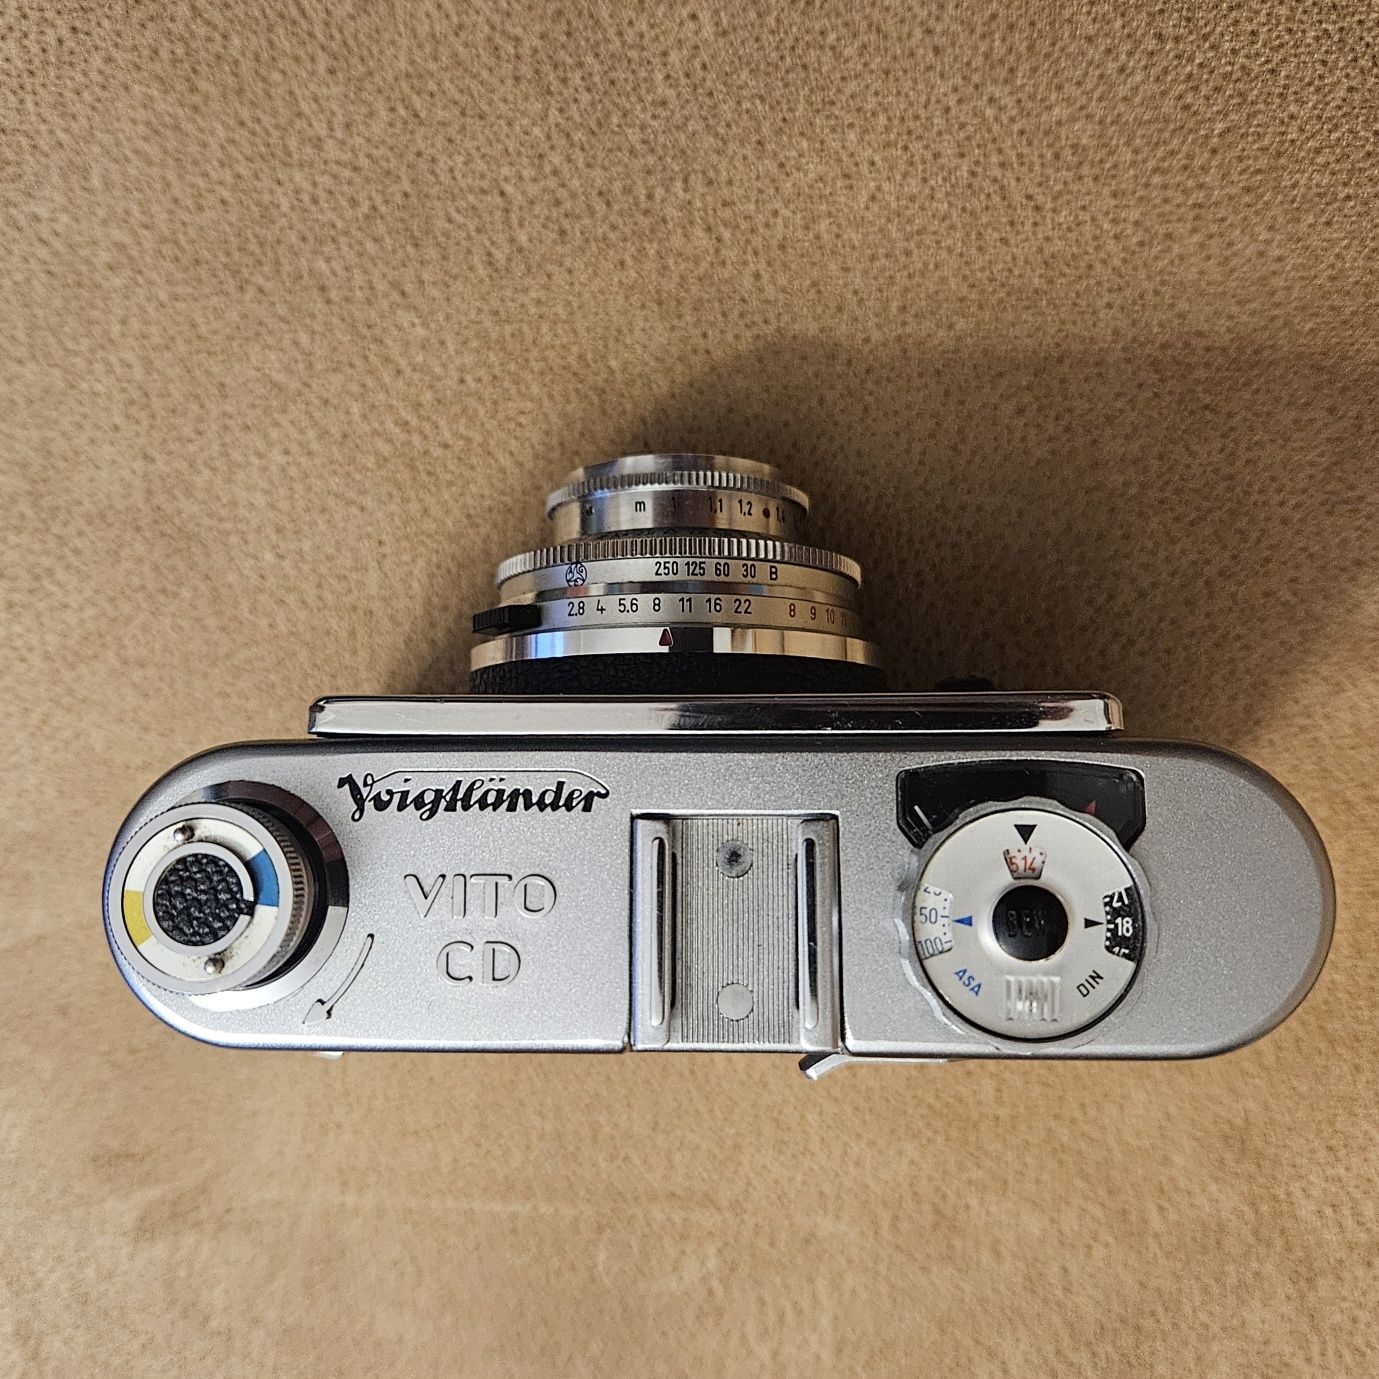 Wyjątkowy rewelacyjny aparat analogowy Voigtlander Vito CD